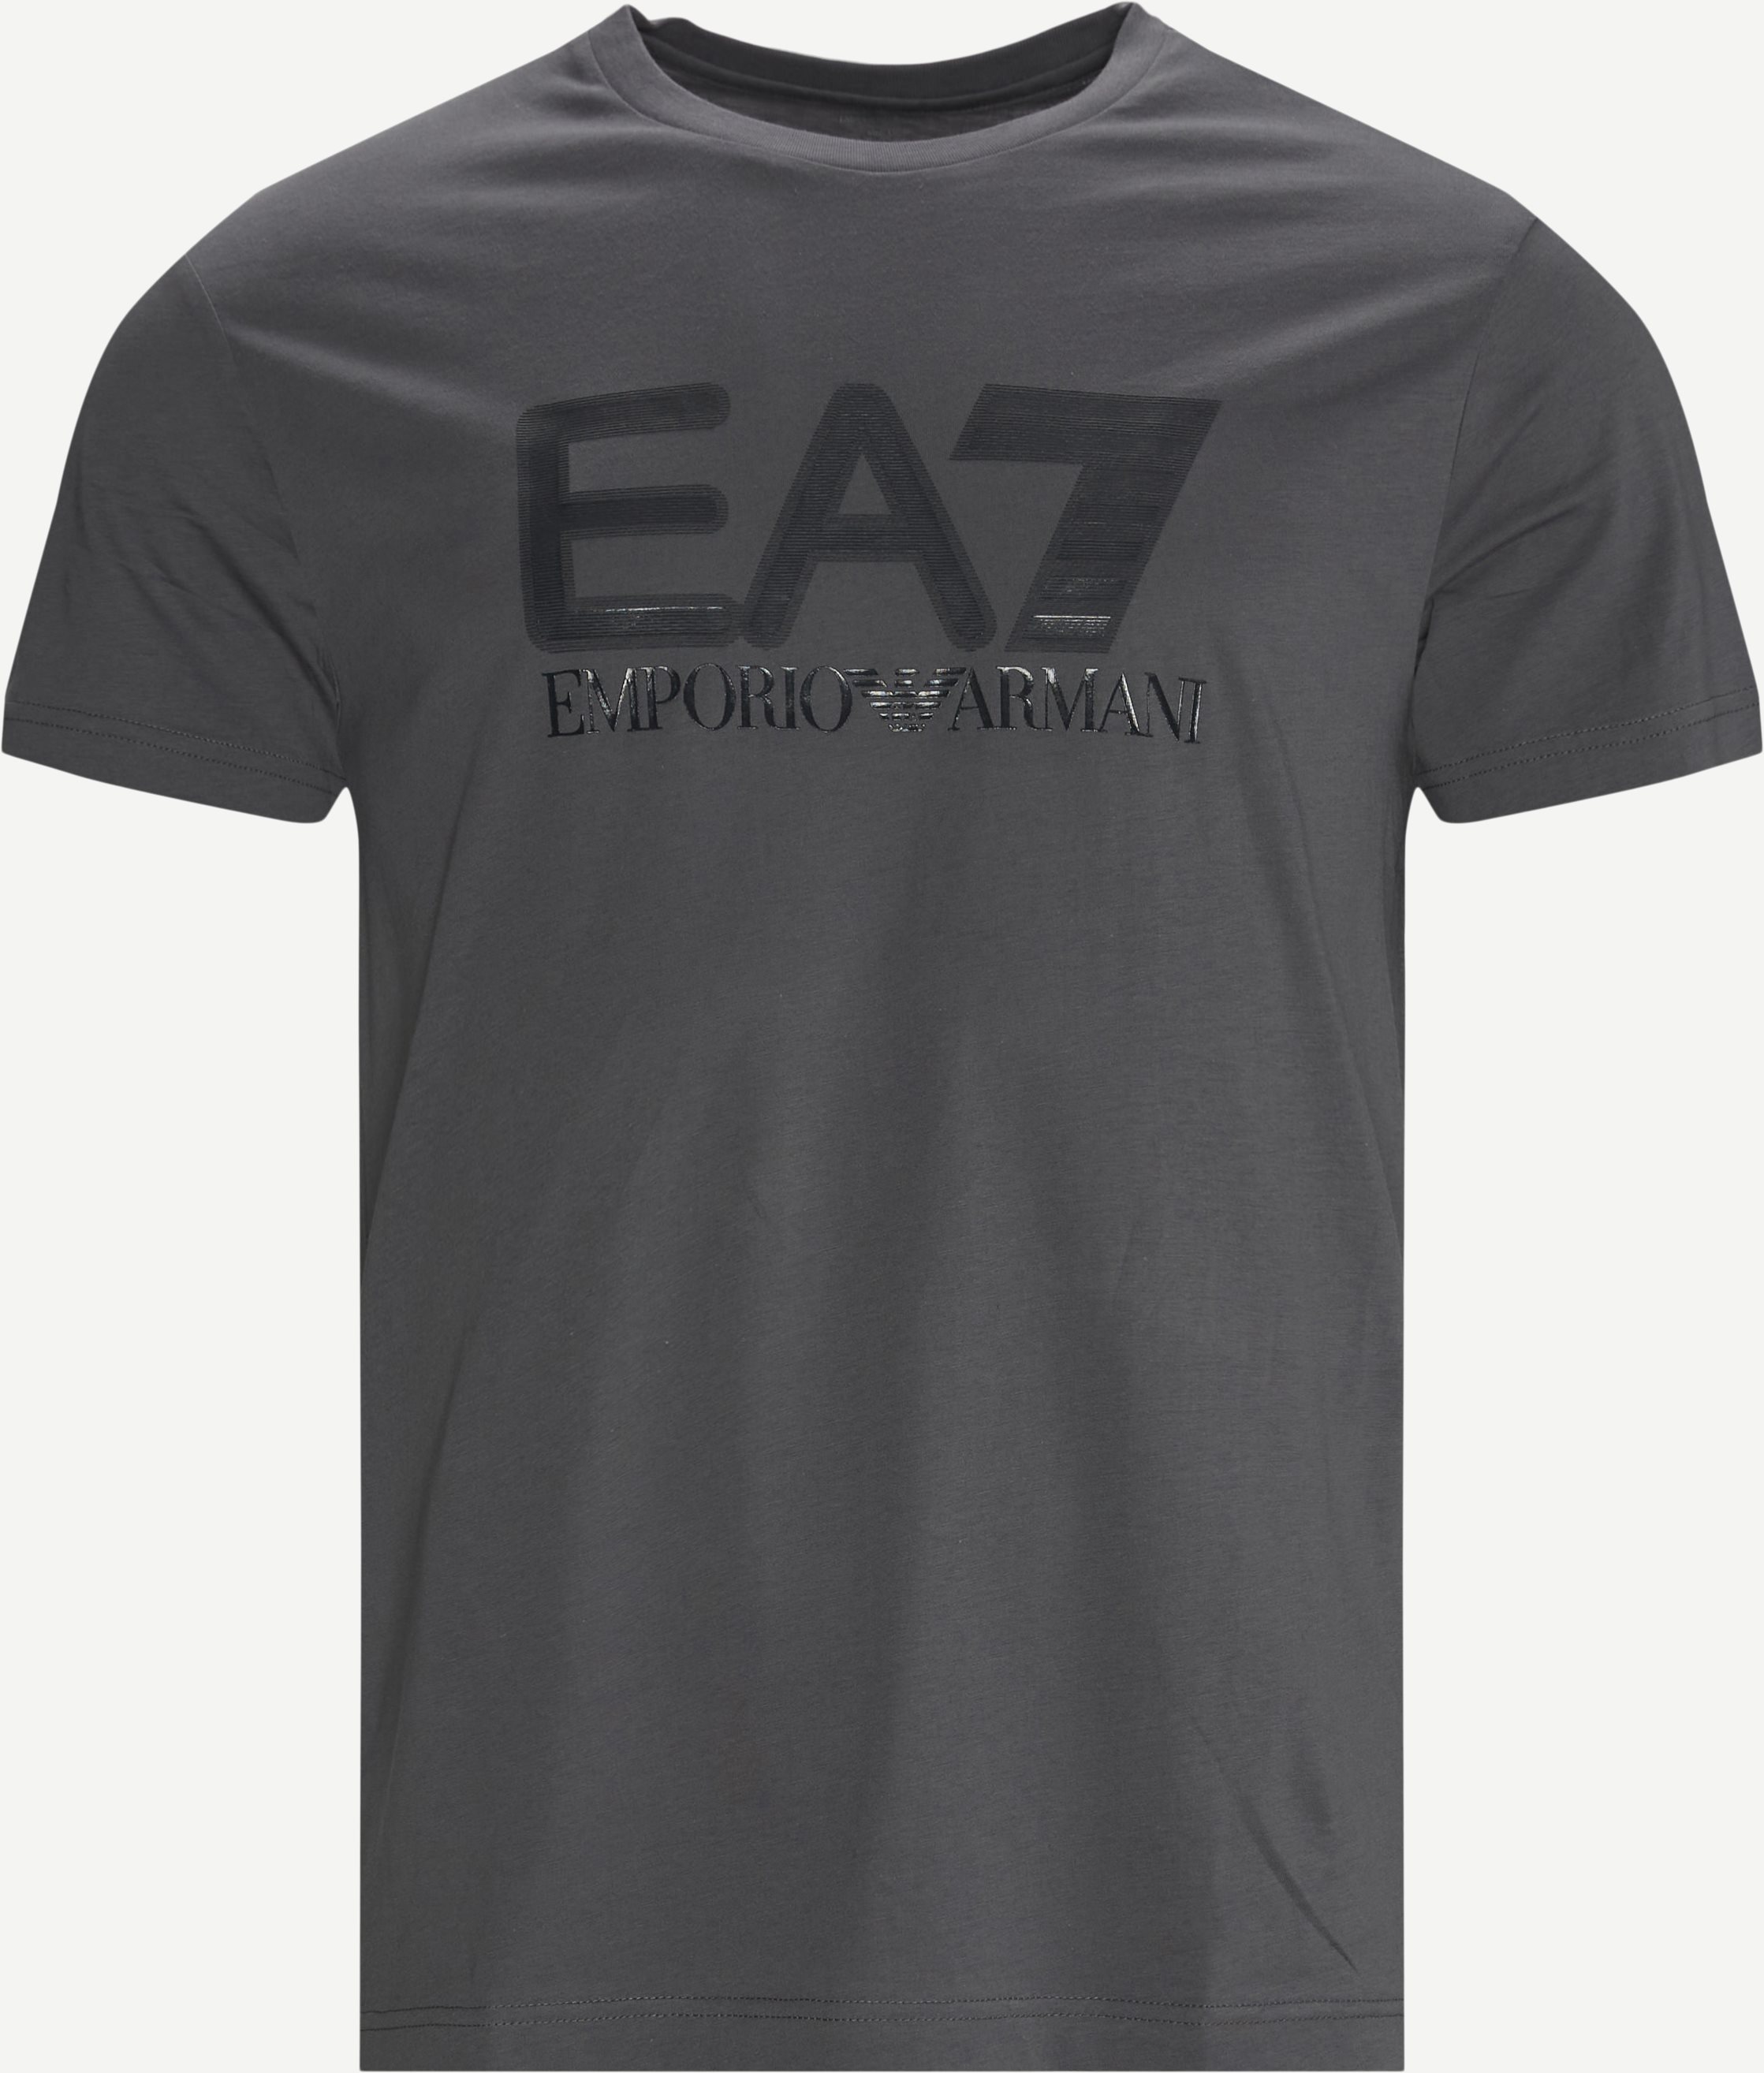 T-Shirt mit PJM9Z-Logo - T-Shirts - Regular fit - Grau